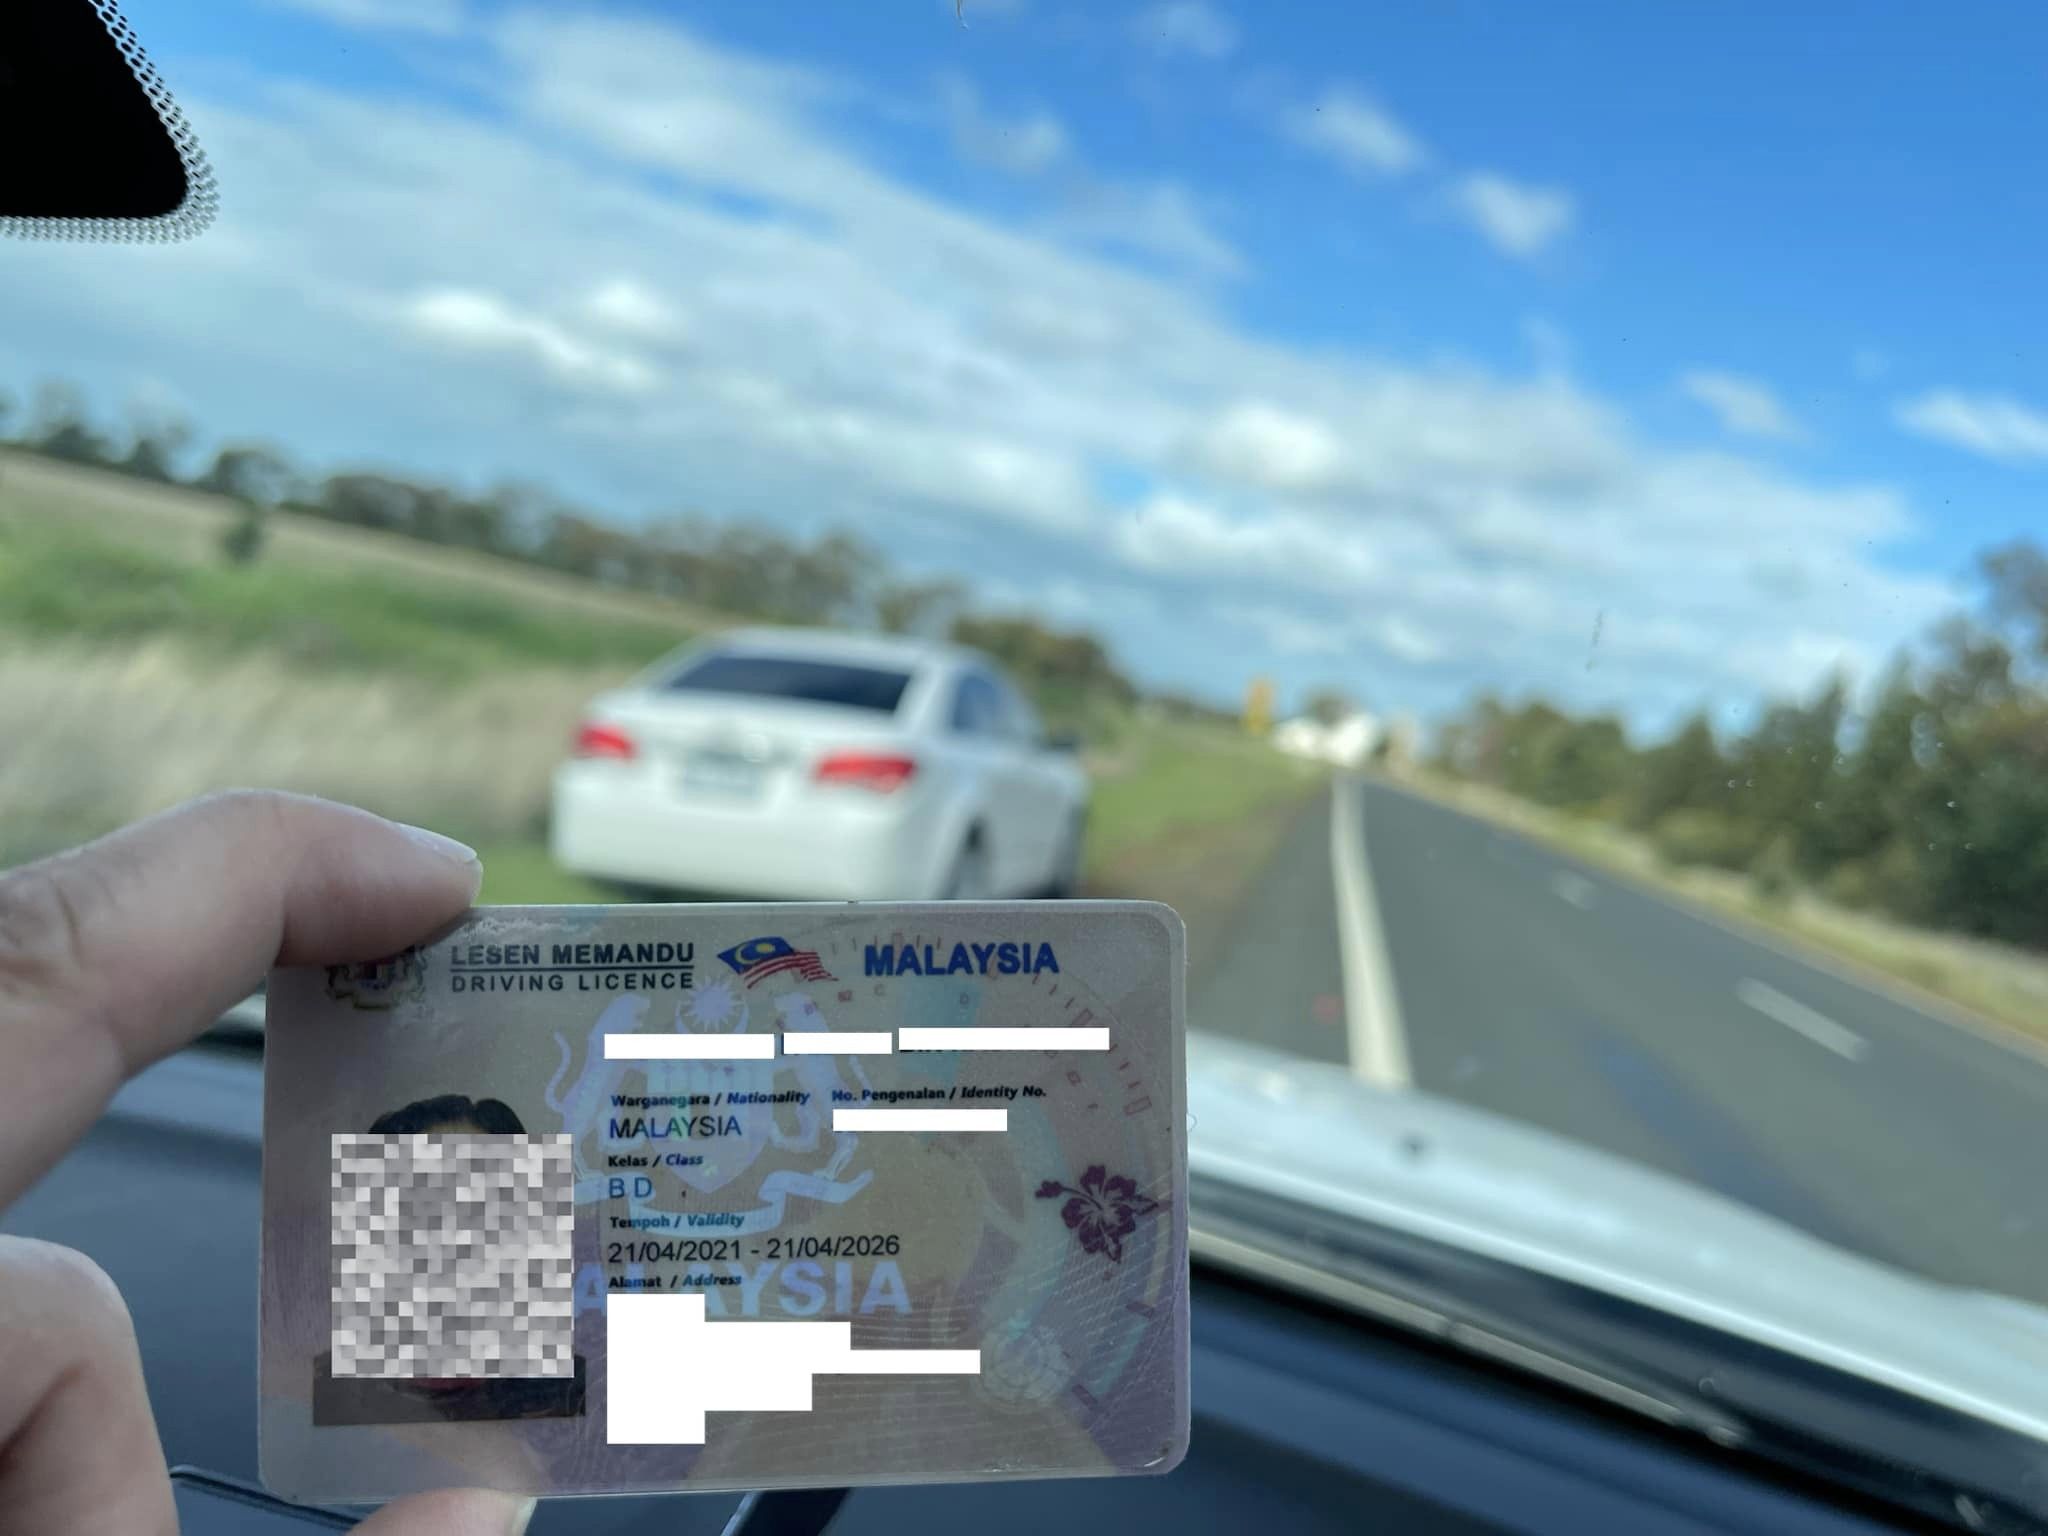 在澳用假驾照开车 3大马人被控有罪